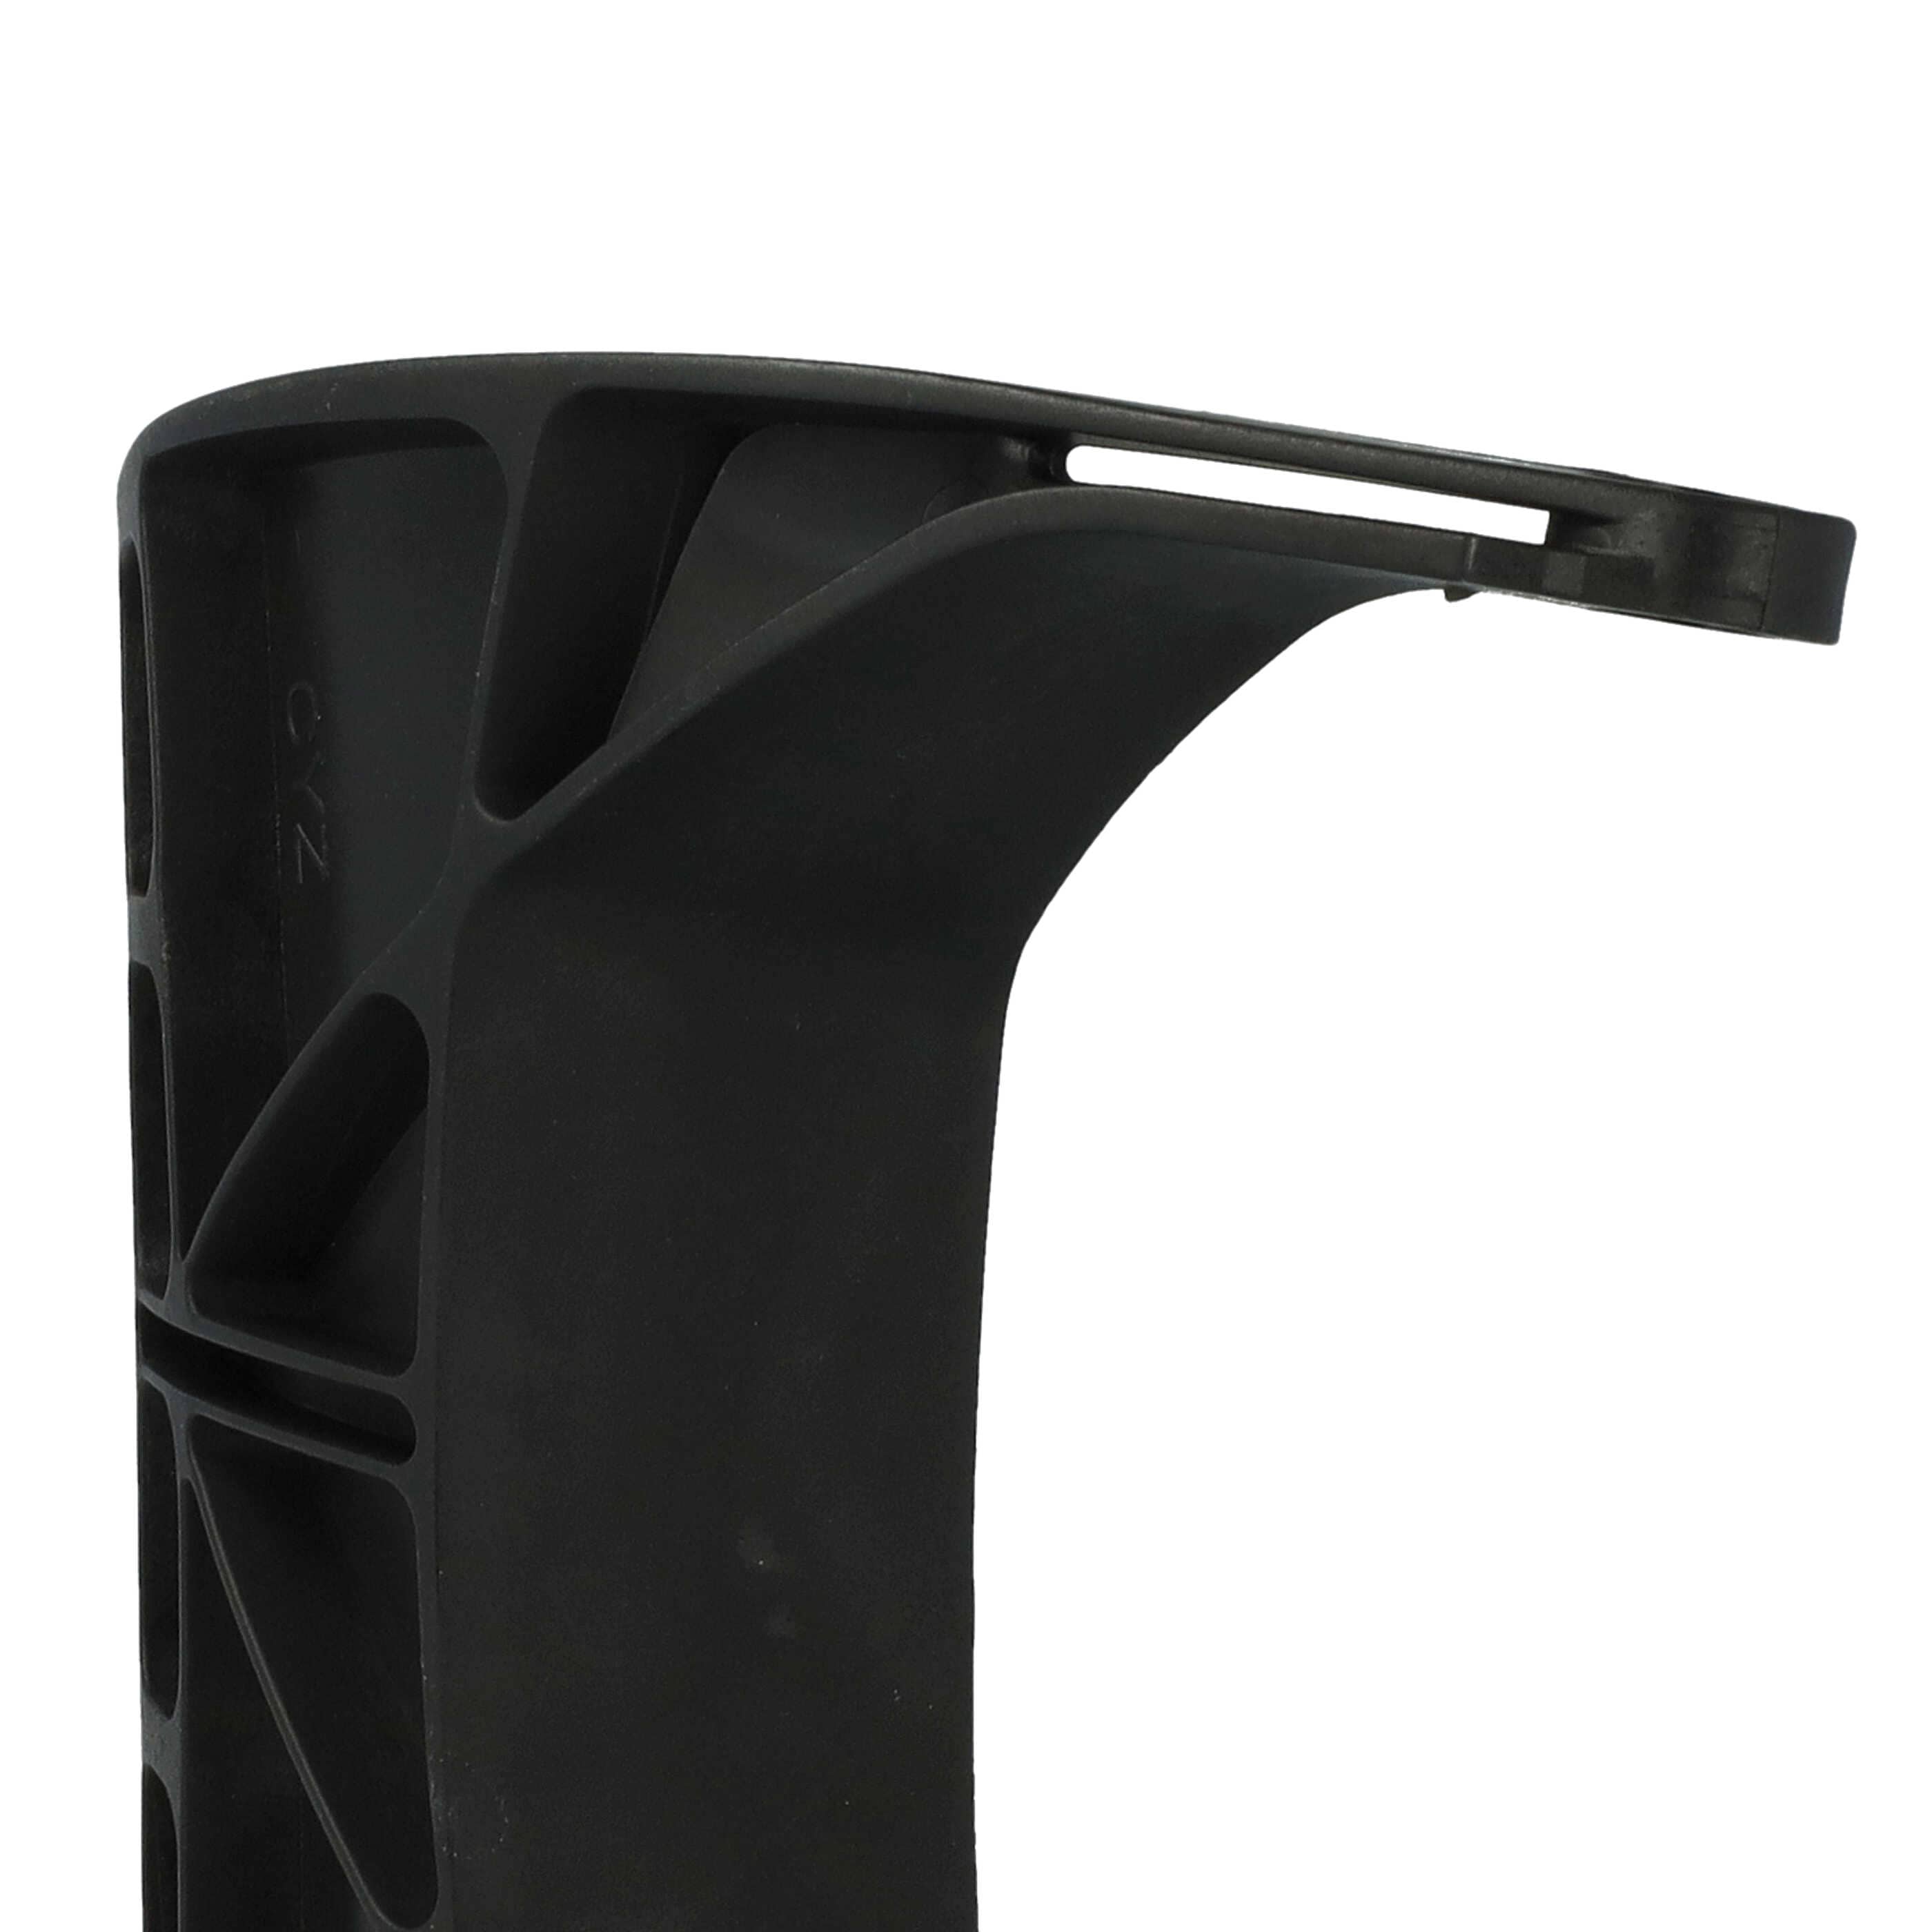 Protège-mains remplace Stihl 1143 792 9103 compatible avec Stihl tronçonneuse - 18,5 x 15,5 x 4 cm noir 